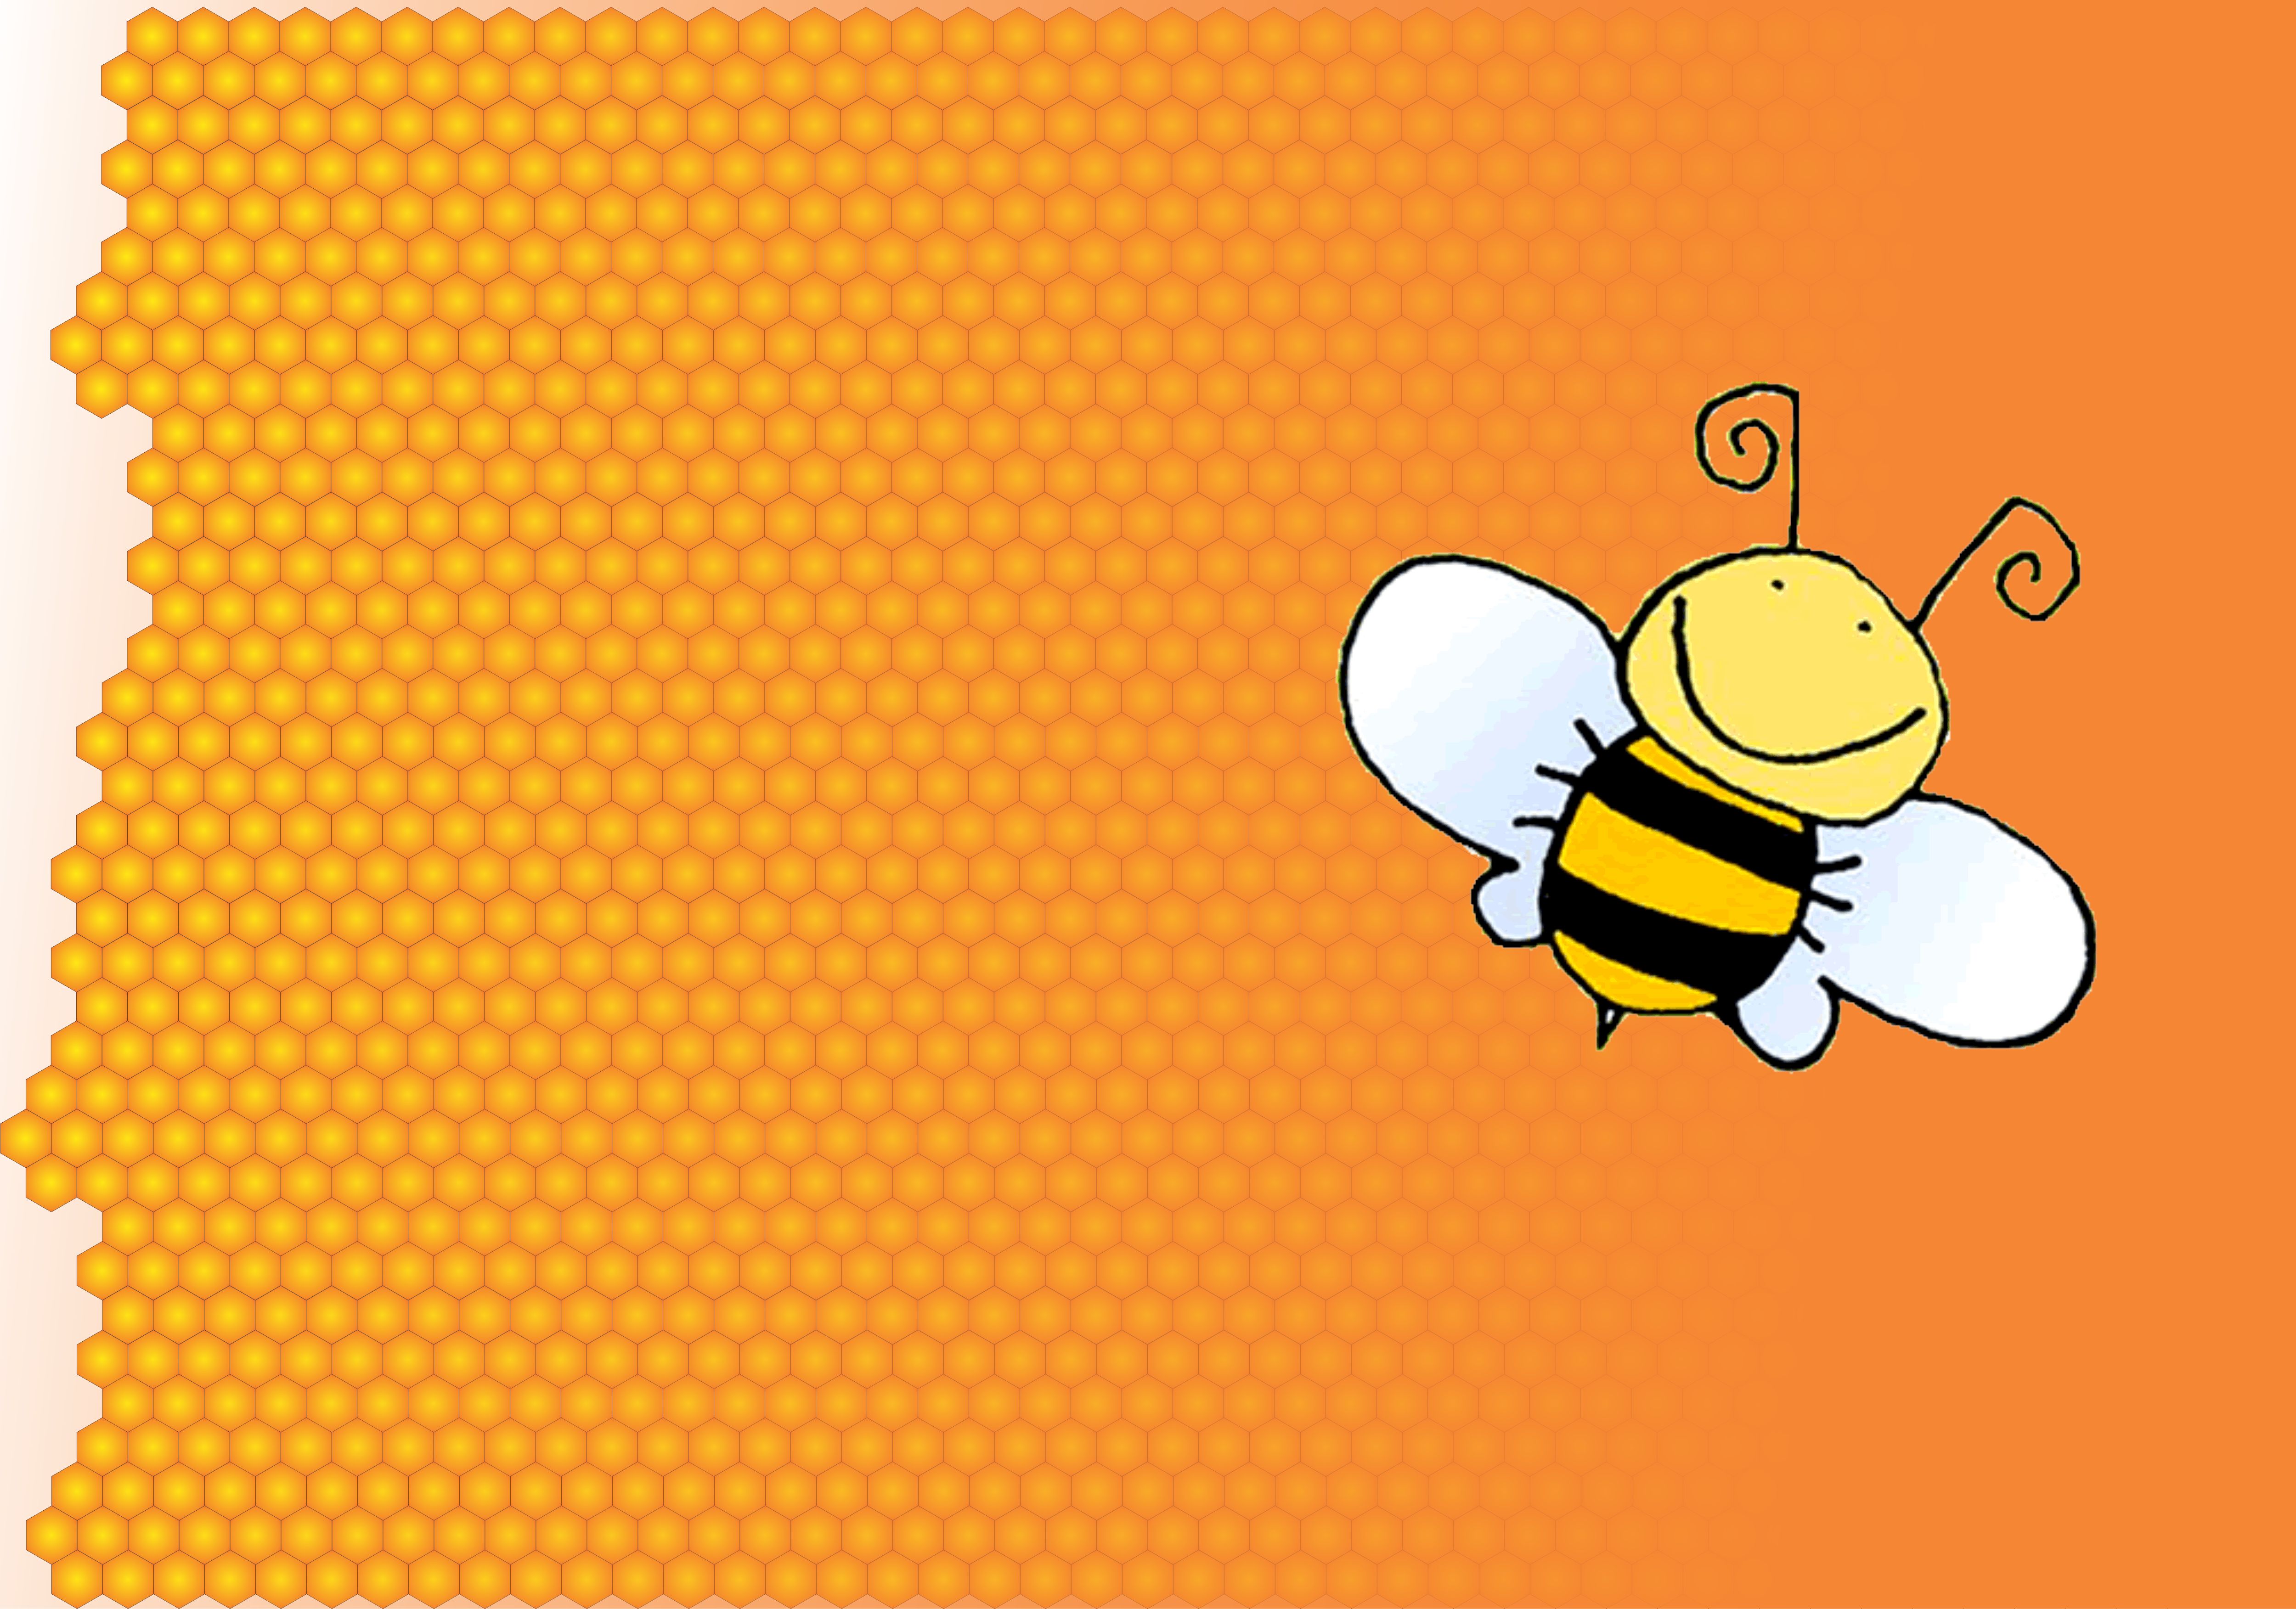 Honey Bee Wallpapers